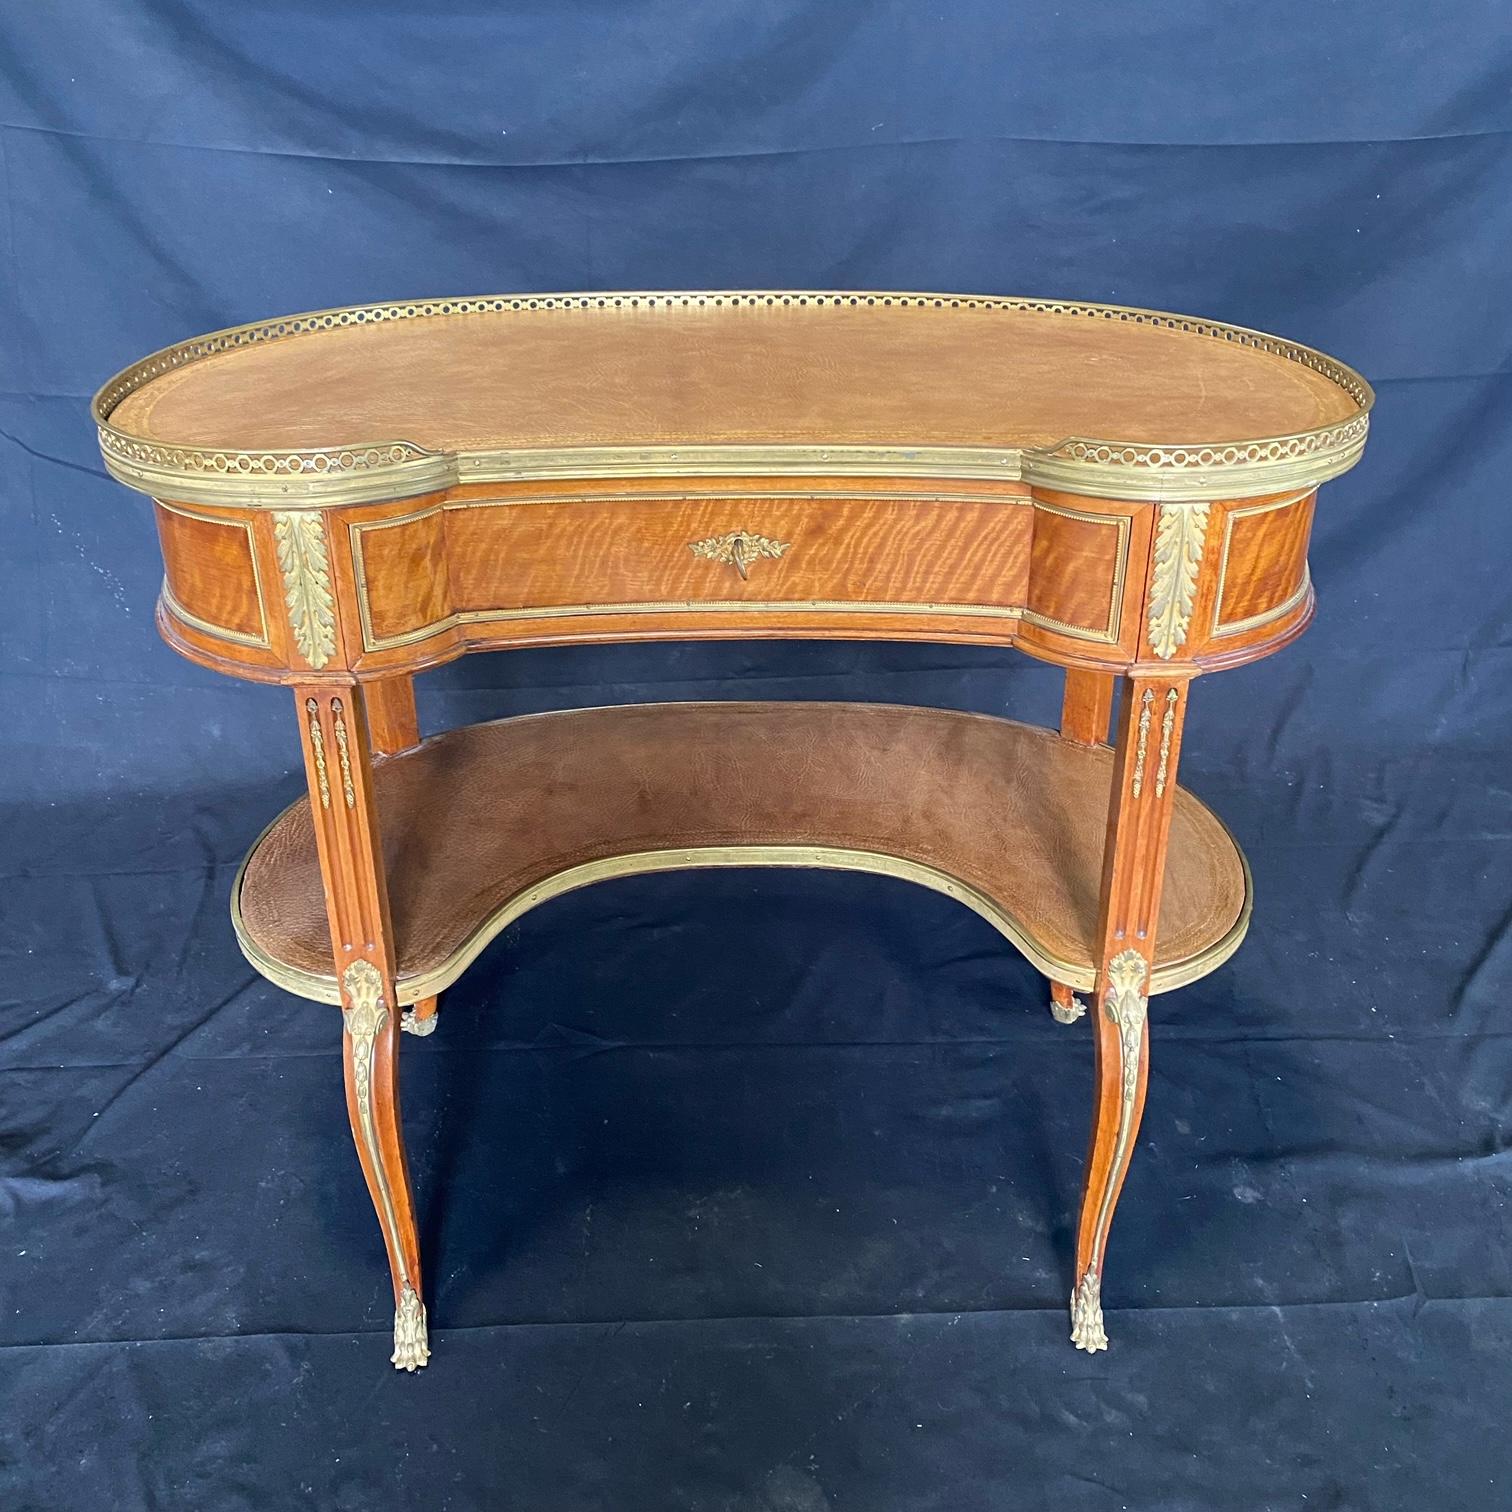 Ein sehr feiner französischer nierenförmiger Schreibtisch im Stil Louis XV aus dem 19. Jahrhundert mit originaler Oberfläche aus getouchtem Leder, elegant montiert in feiner vergoldeter Bronze und auf Cabriole-Beinen. Schwacher Kreisfleck auf der